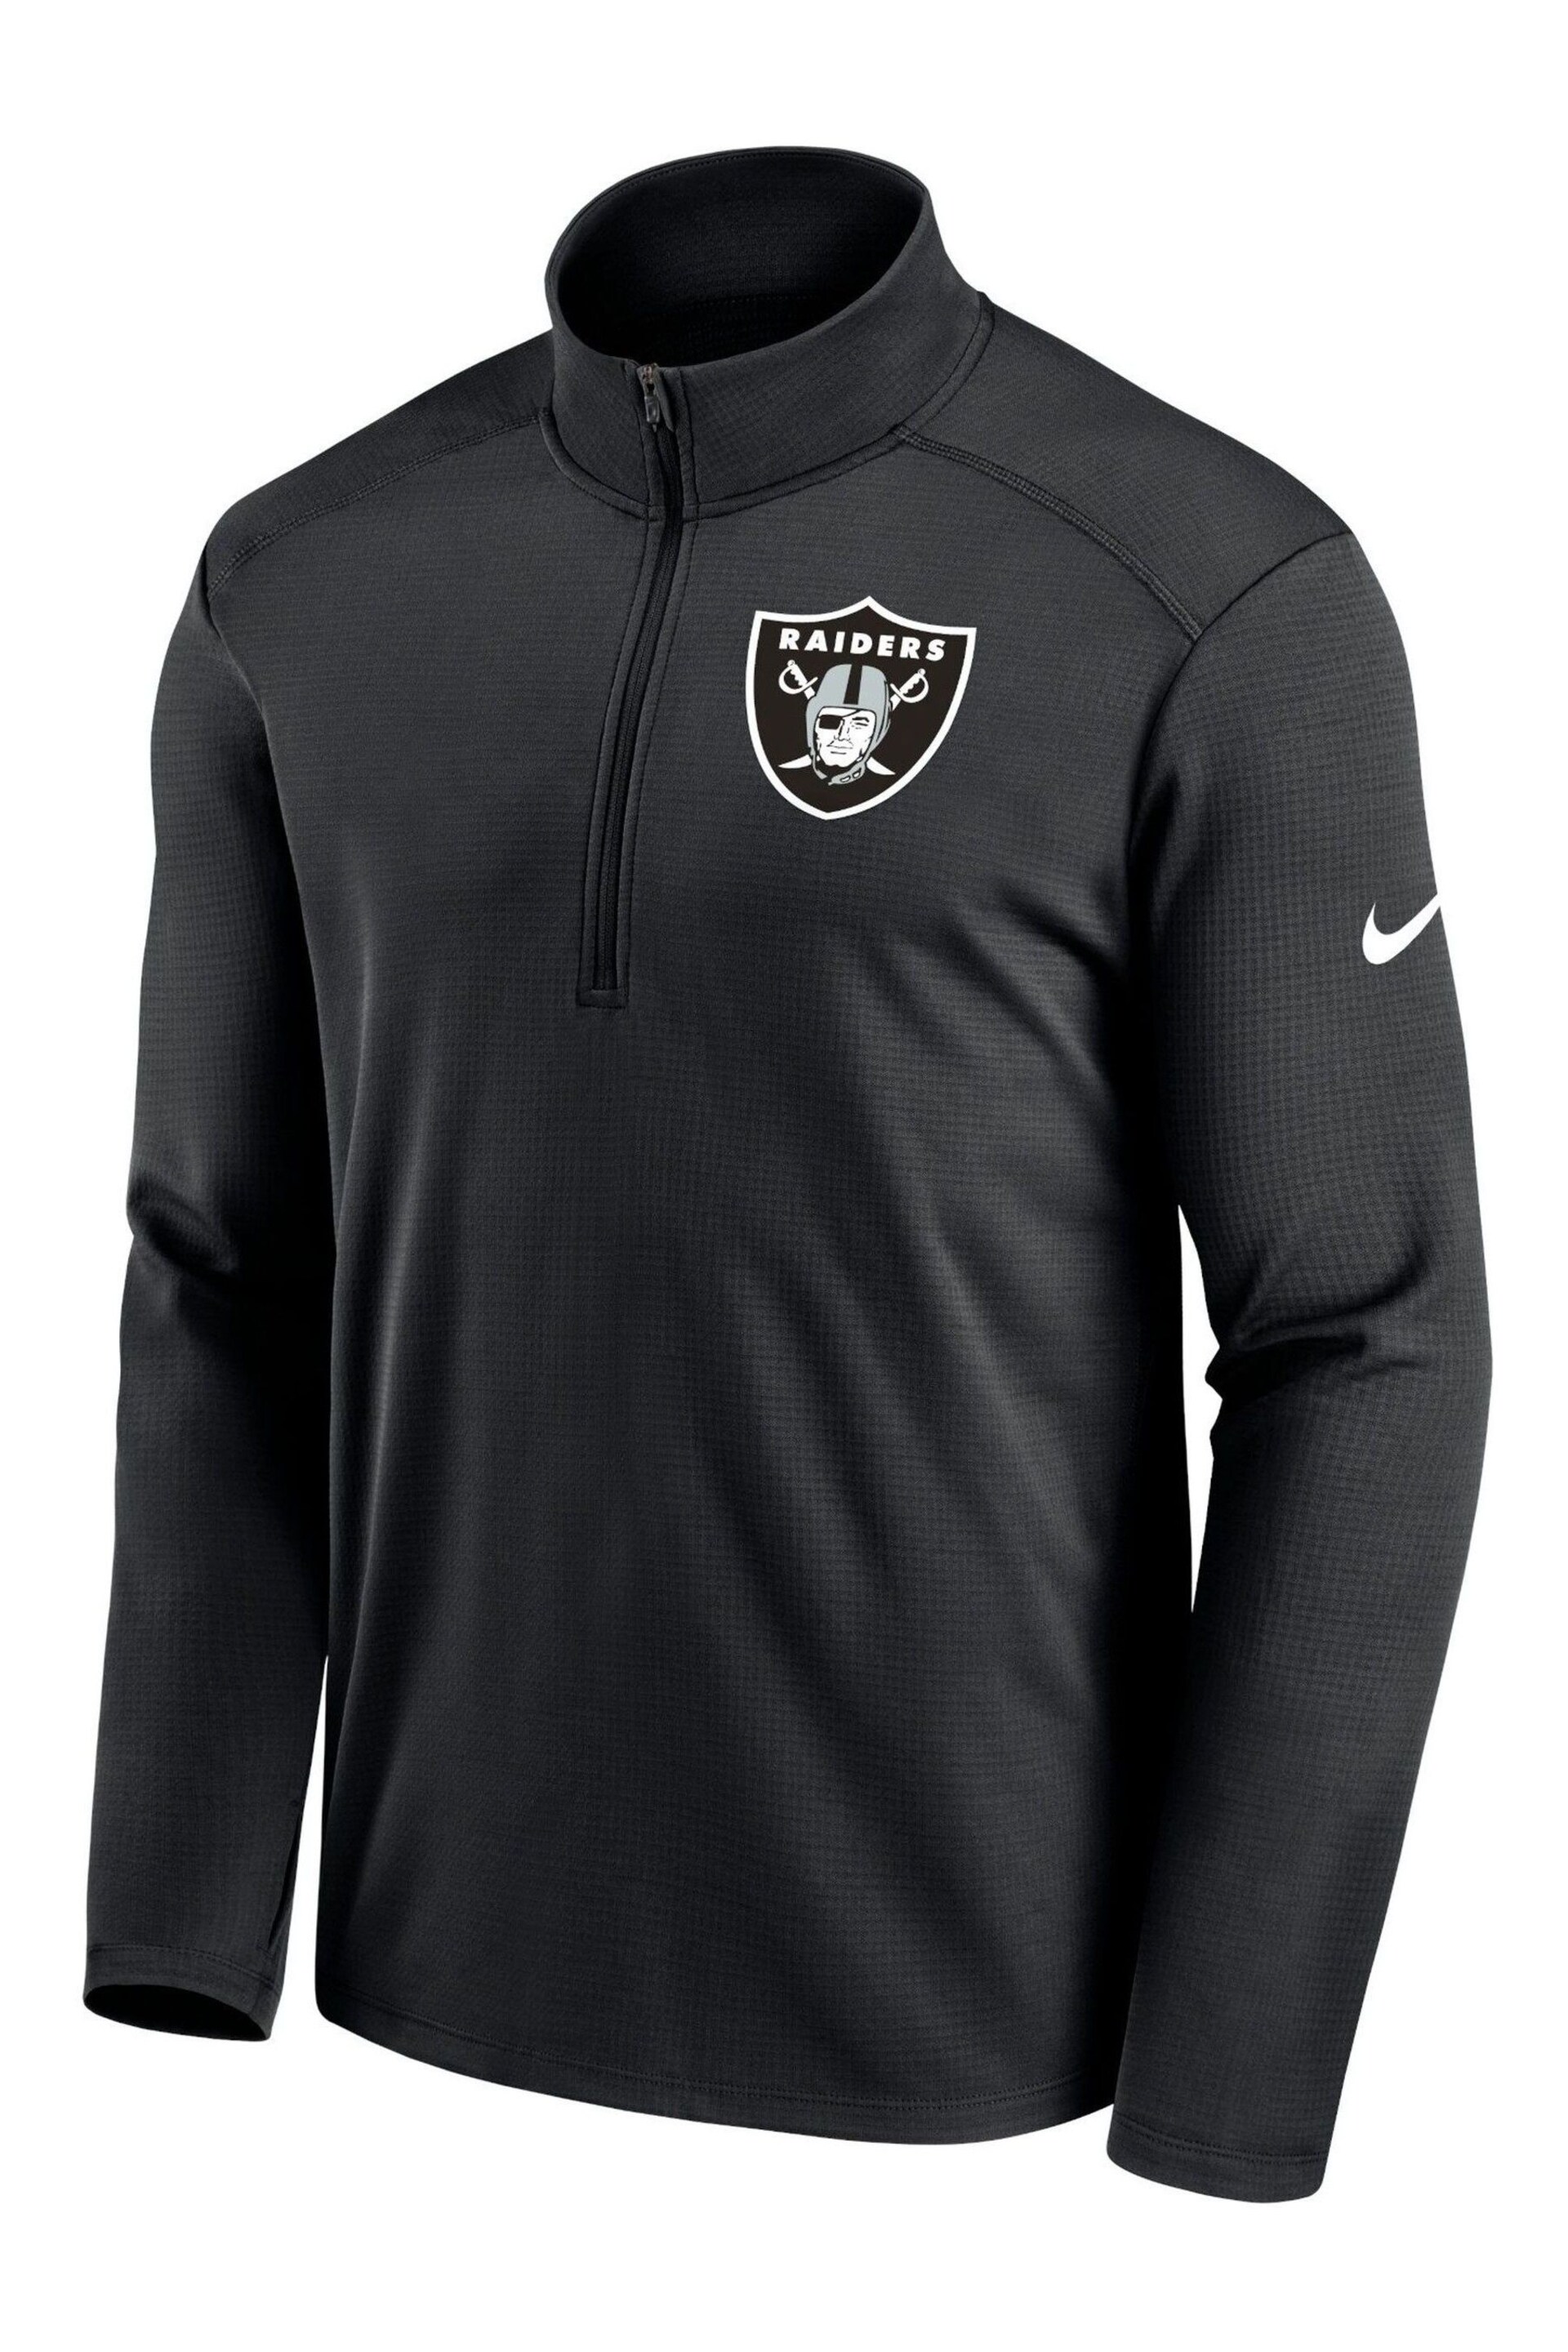 Nike Black NFL Fanatics Las Vegas Raiders Logo Pacer Half Zip Hoodie - Image 1 of 3